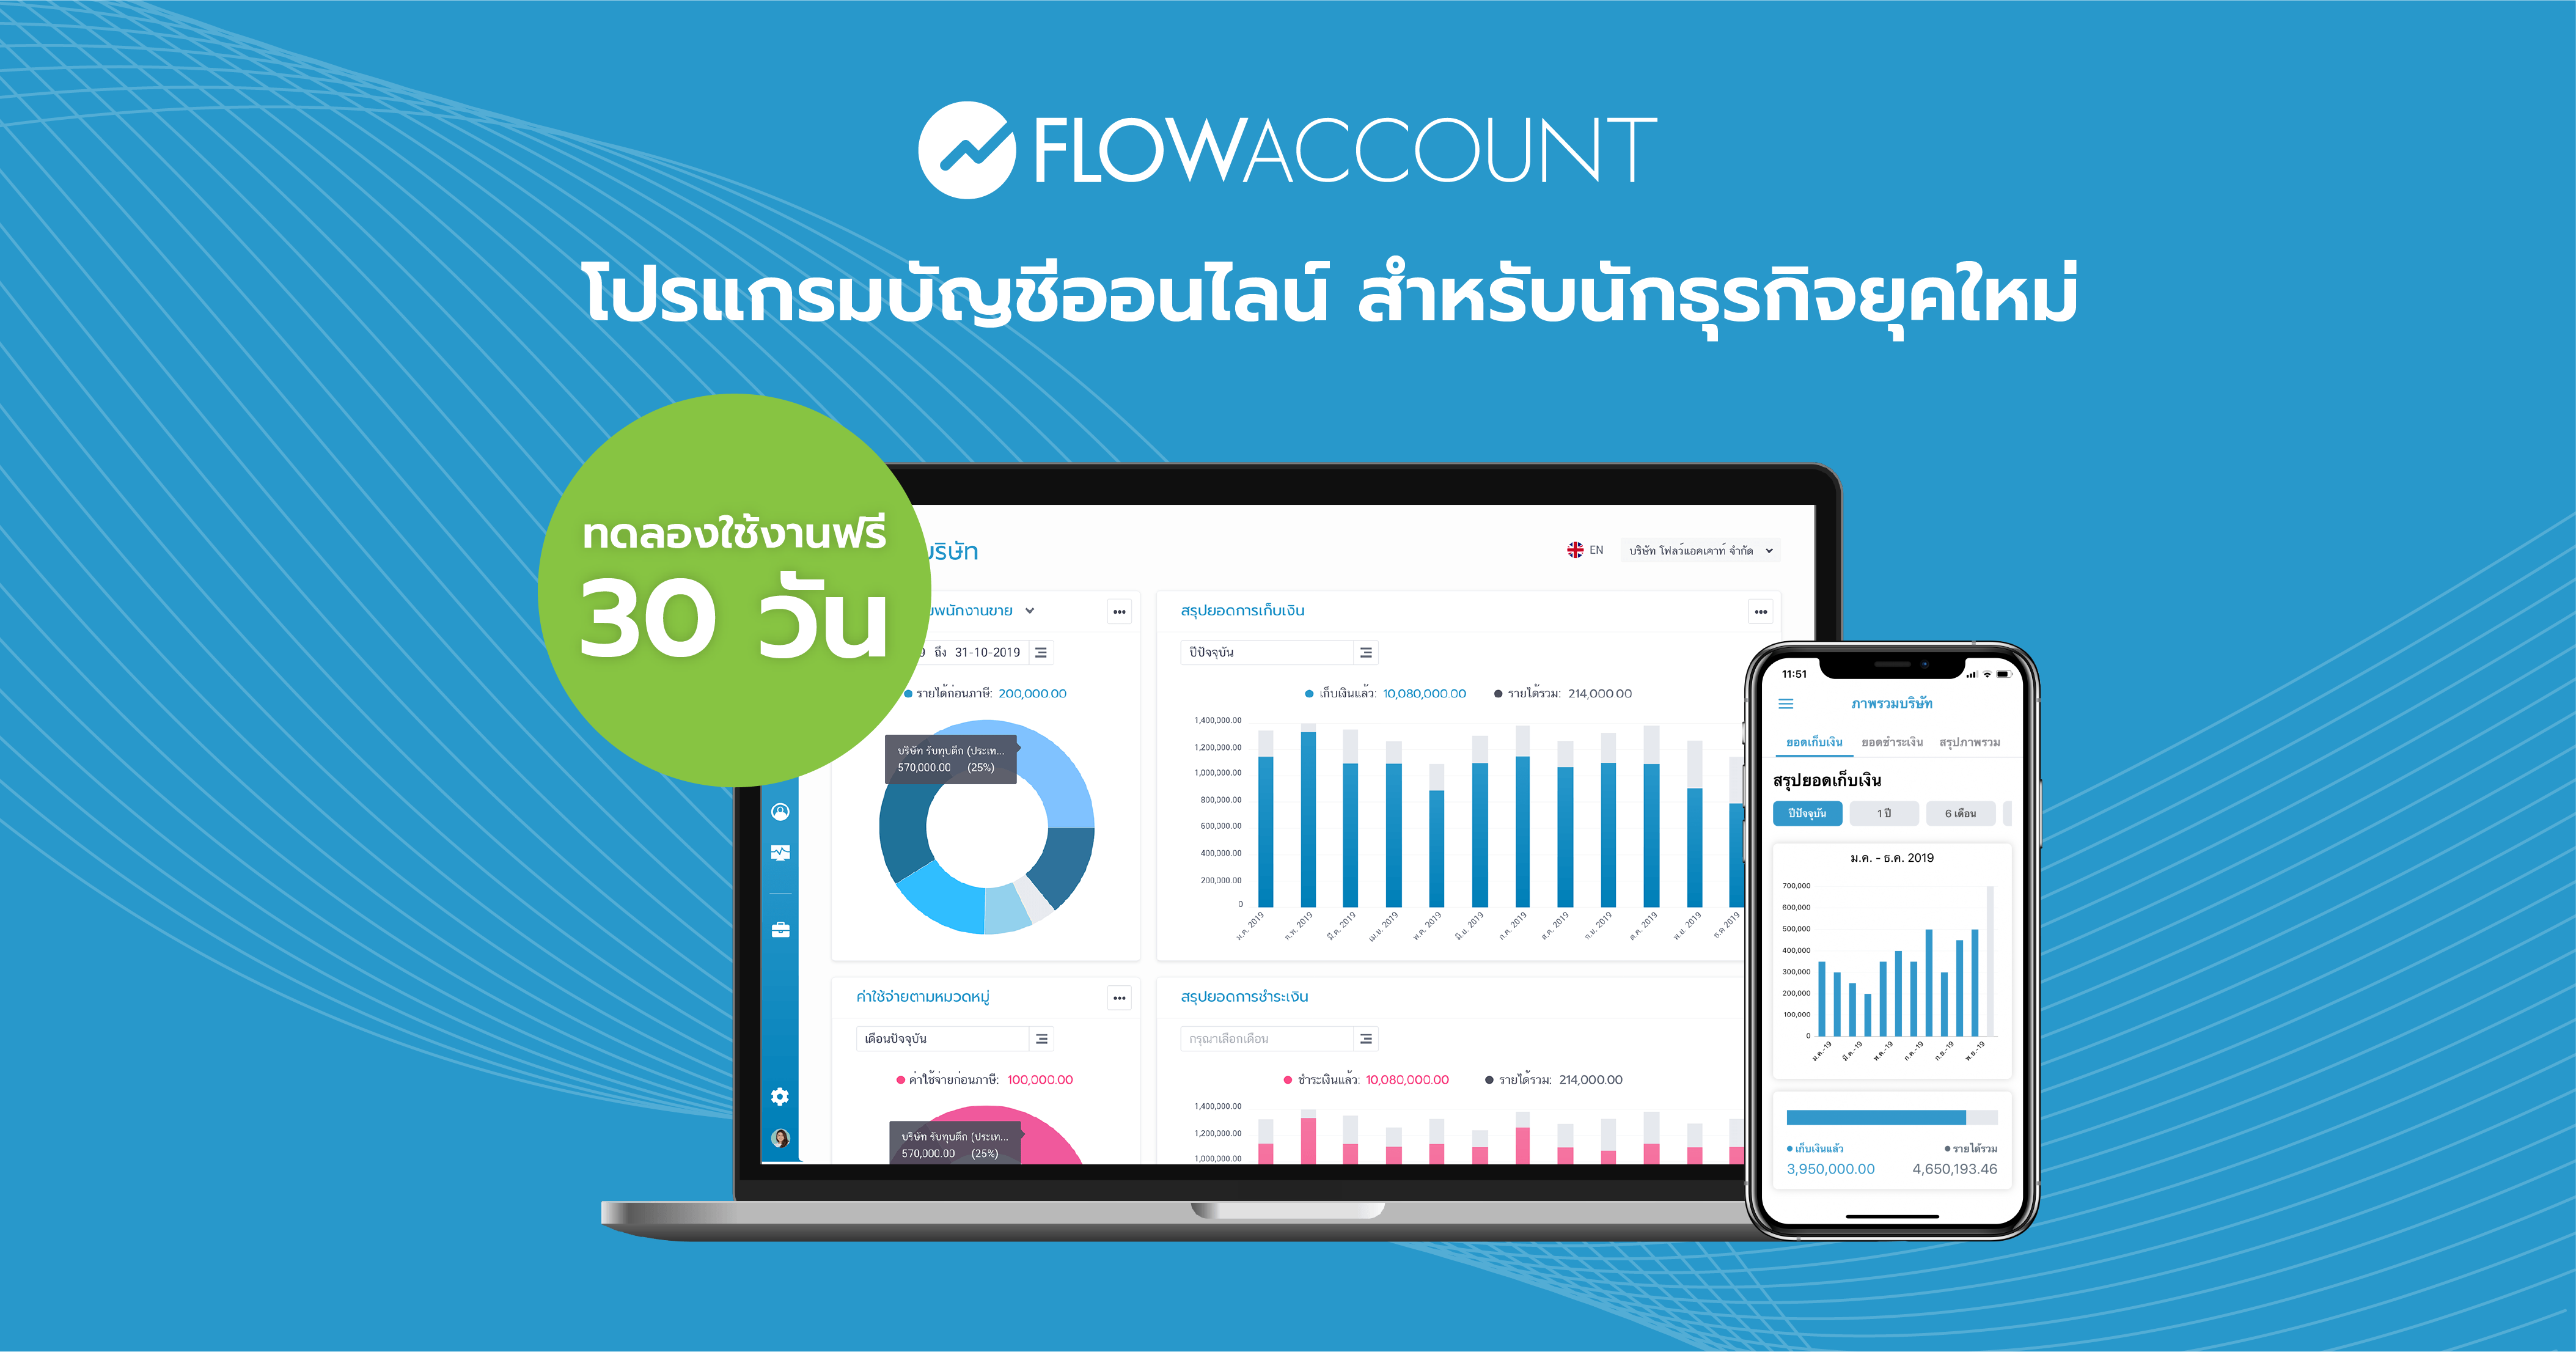 개발자와 PM이 많은 태국 스타트업 FlowAccount 팀이 시각적 협업 플랫폼을 도입한 이유